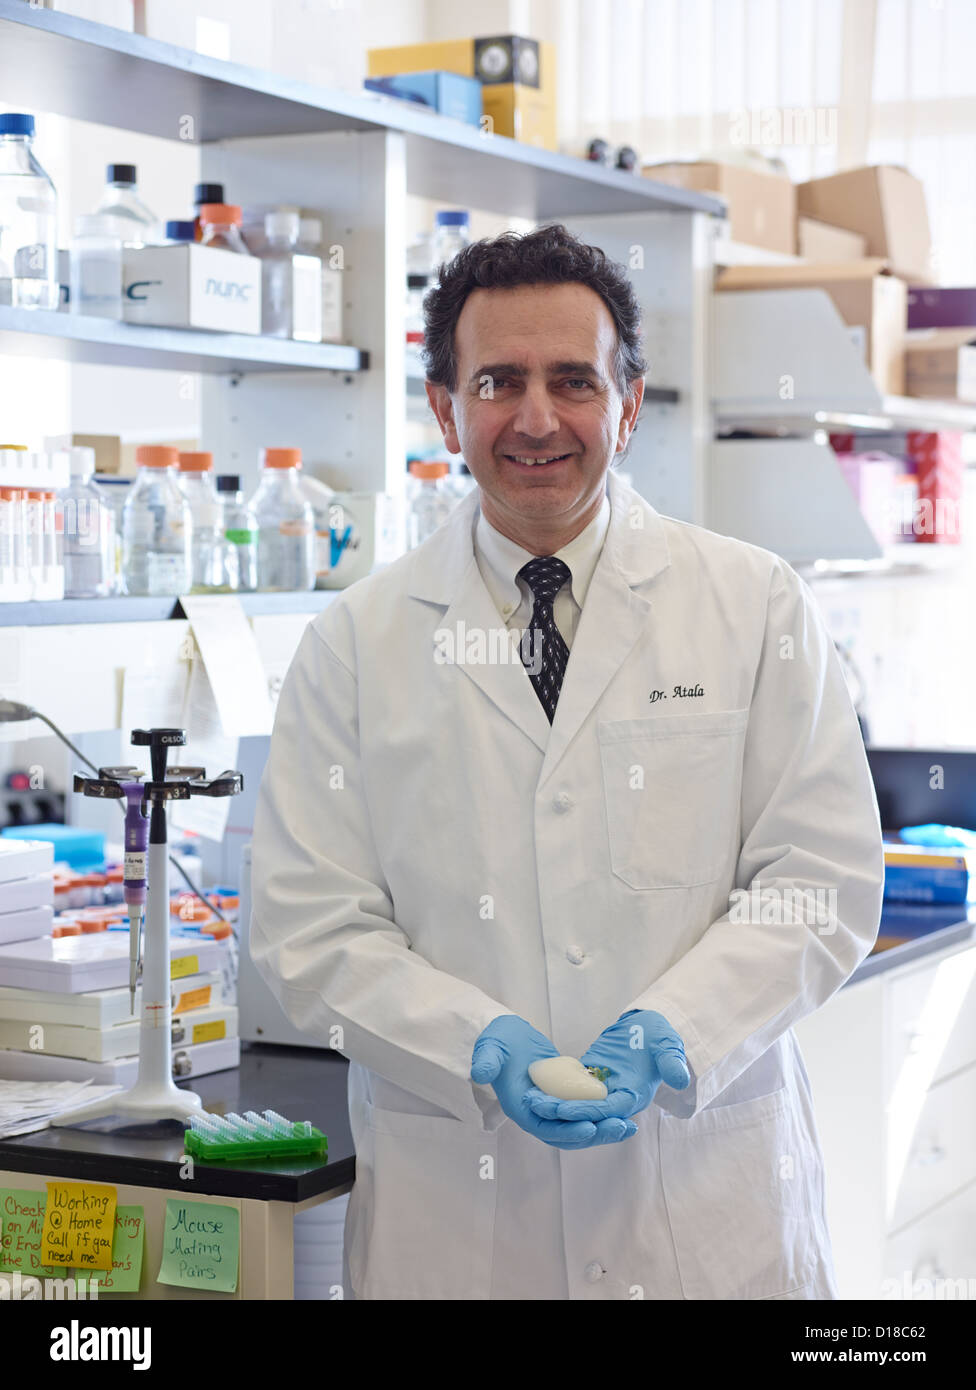 Medico Anthony Atala, M.D., Professore e Direttore del Wake Forest Institute per la medicina rigenerativa tenendo i campioni di medicinali Foto Stock